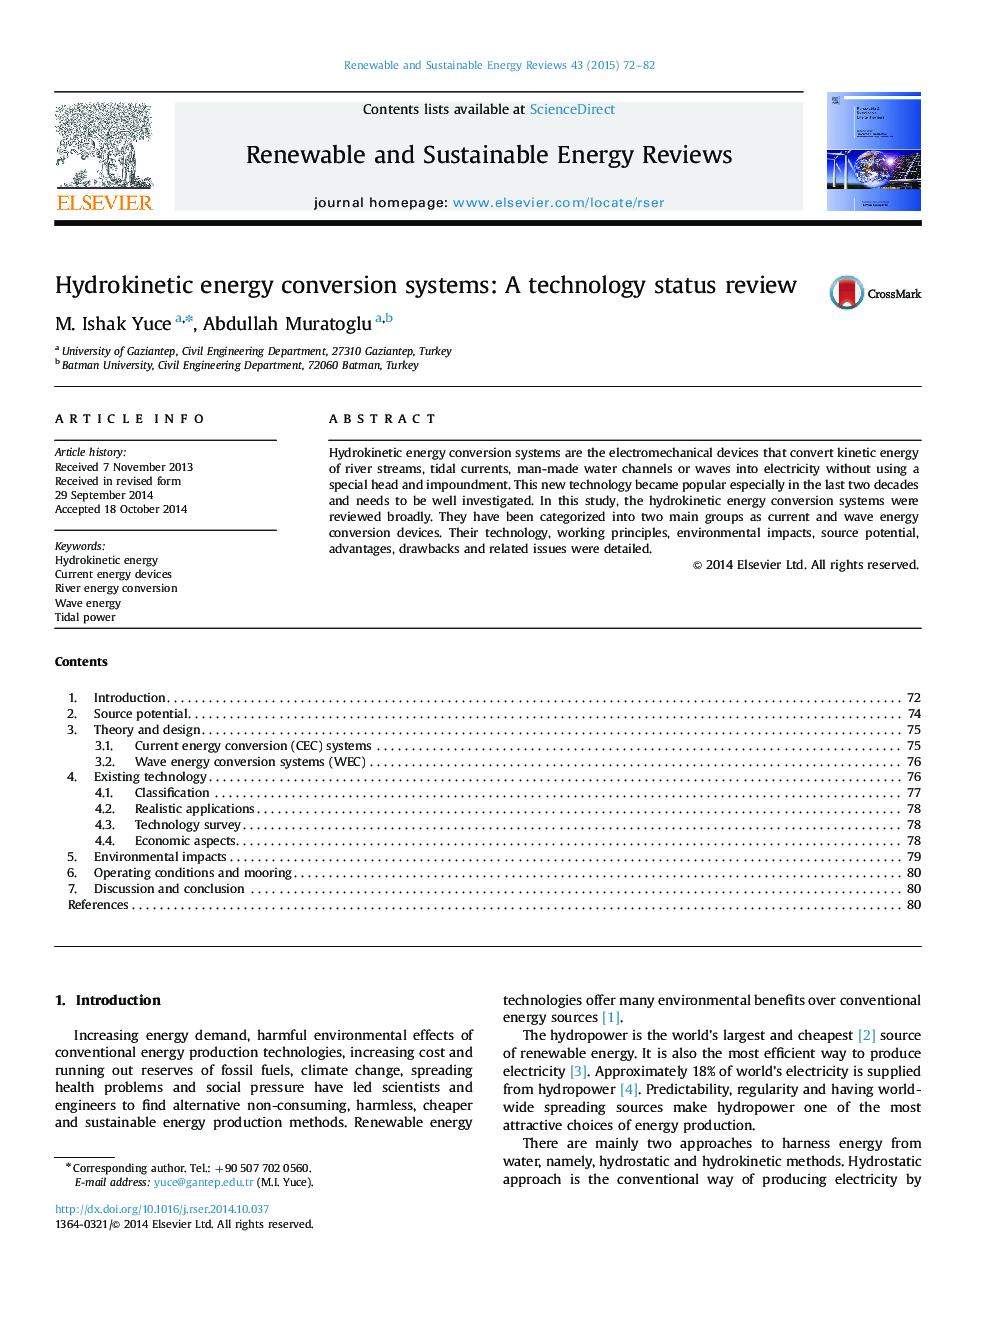 سیستم های تبدیل انرژی هیدروکینتیک: بررسی وضعیت فناوری 